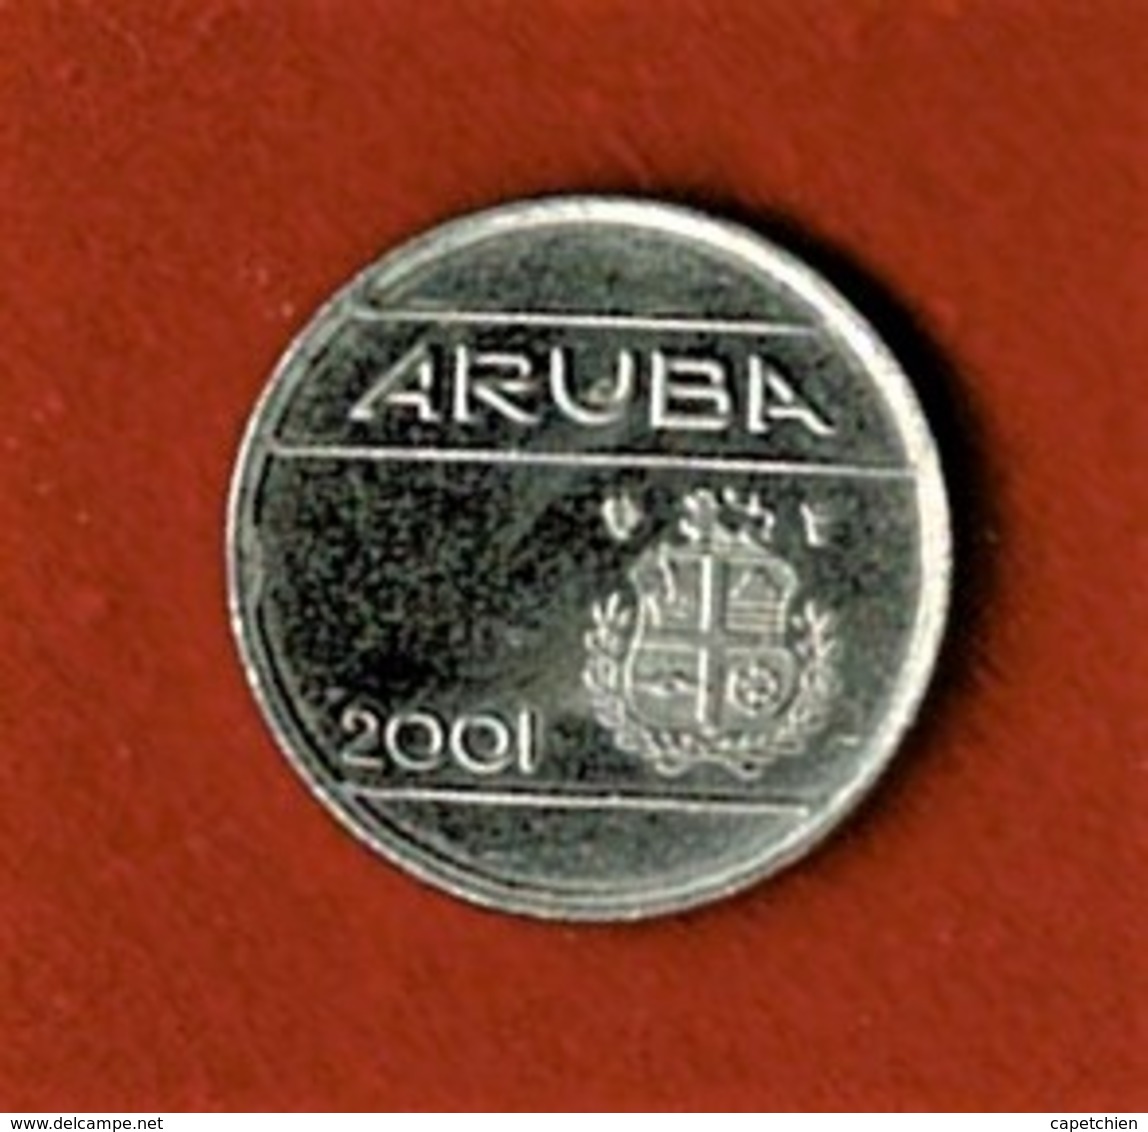 ARUBA / ILE NEERLANDAISE DES CARAIBES / 5 C. / 2001 - Autres – Amérique